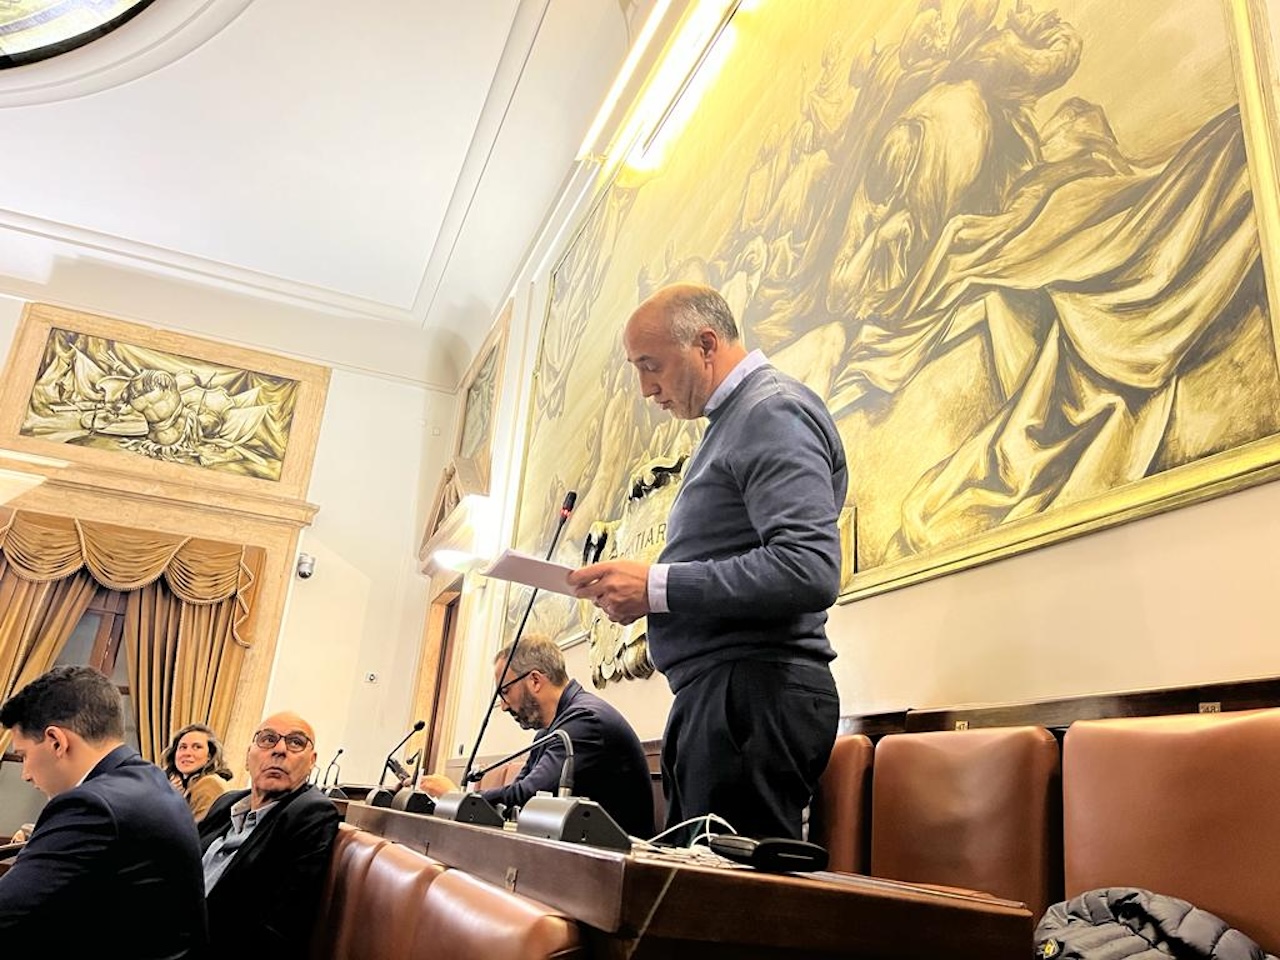 A Catania il consigliere Mirenda inoltra la mozione “Interventi urgenti immobili Edilizia Popolare”